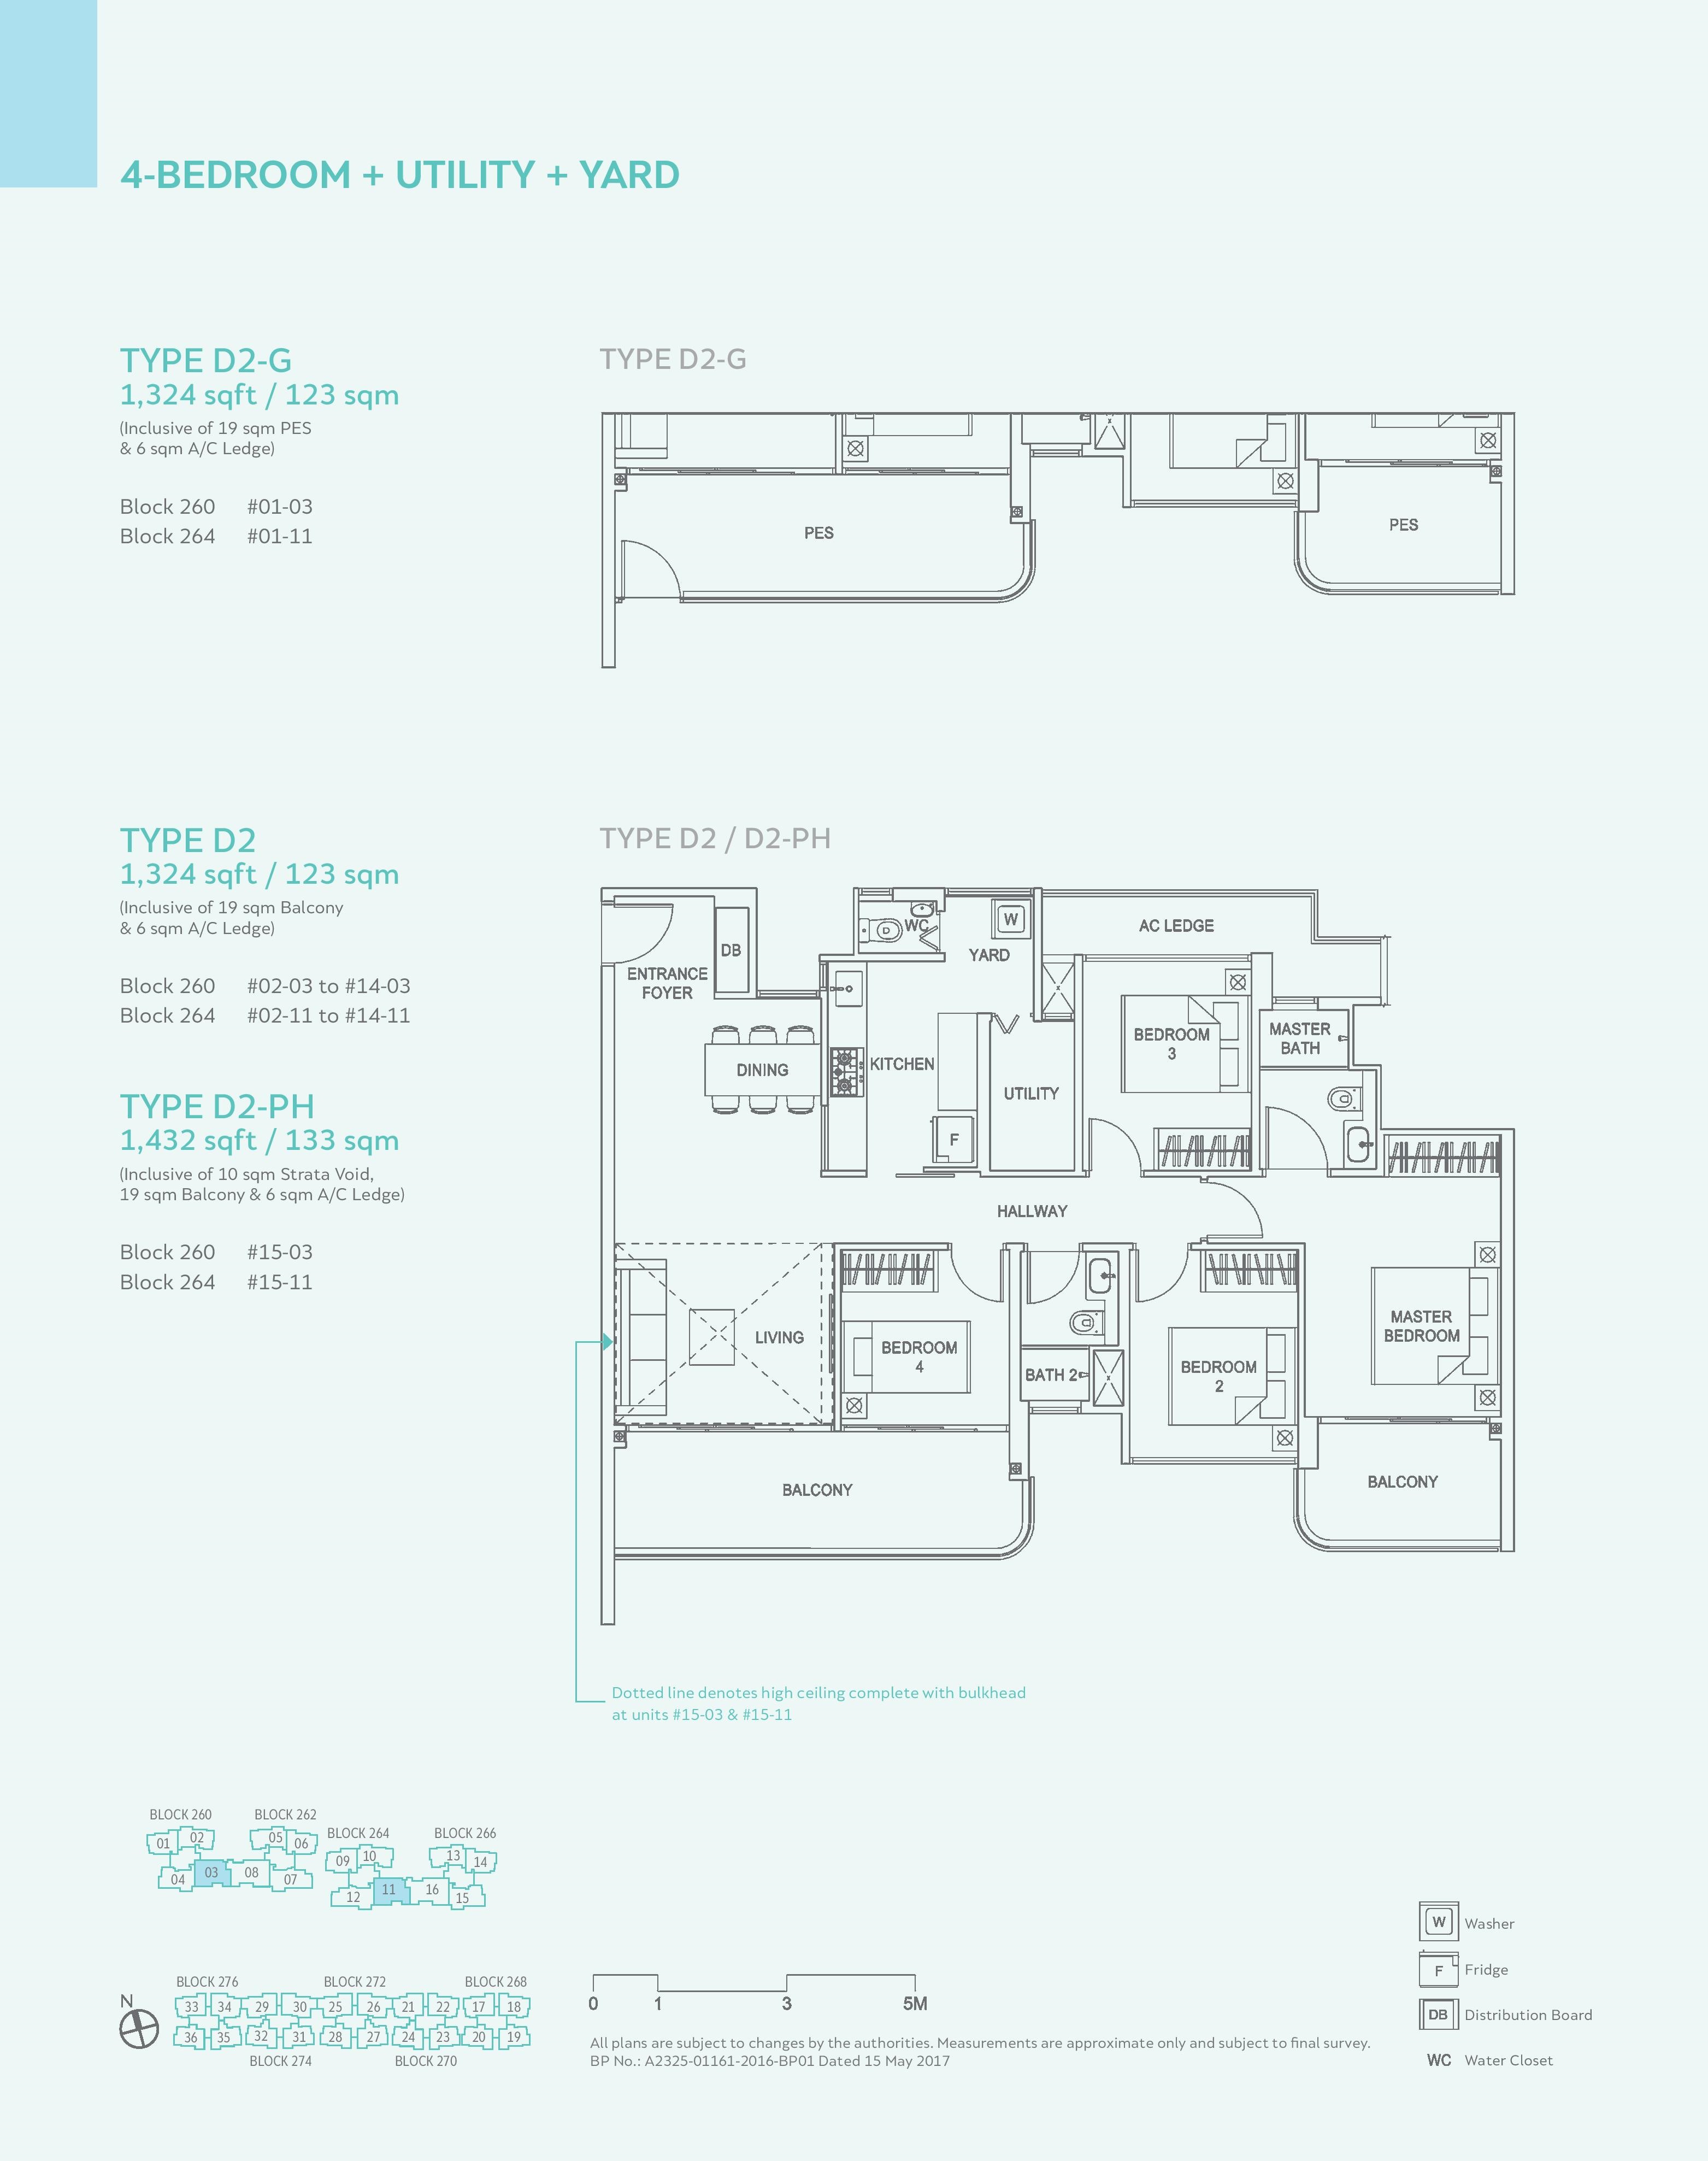 Hundred Palms Residences 4 Bedroom + Utility + Yard Type D2, D2-G, D2-PH Floor Plans